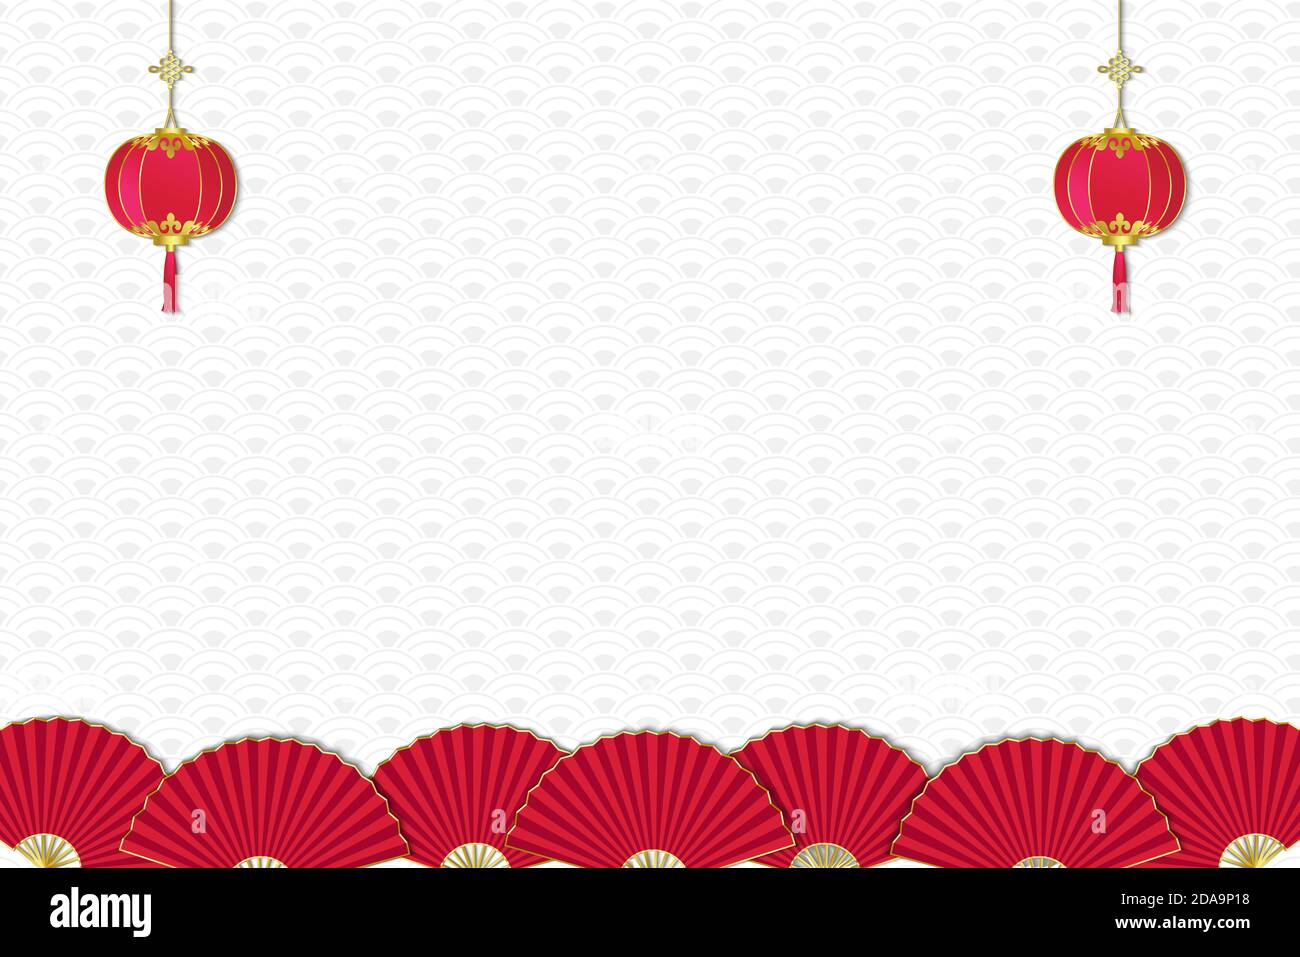 Arrière-plan du nouvel an chinois décoré avec des lanternes suspendues rouges et Fans à la frontière sur un motif chinois à vagues grises Illustration de Vecteur